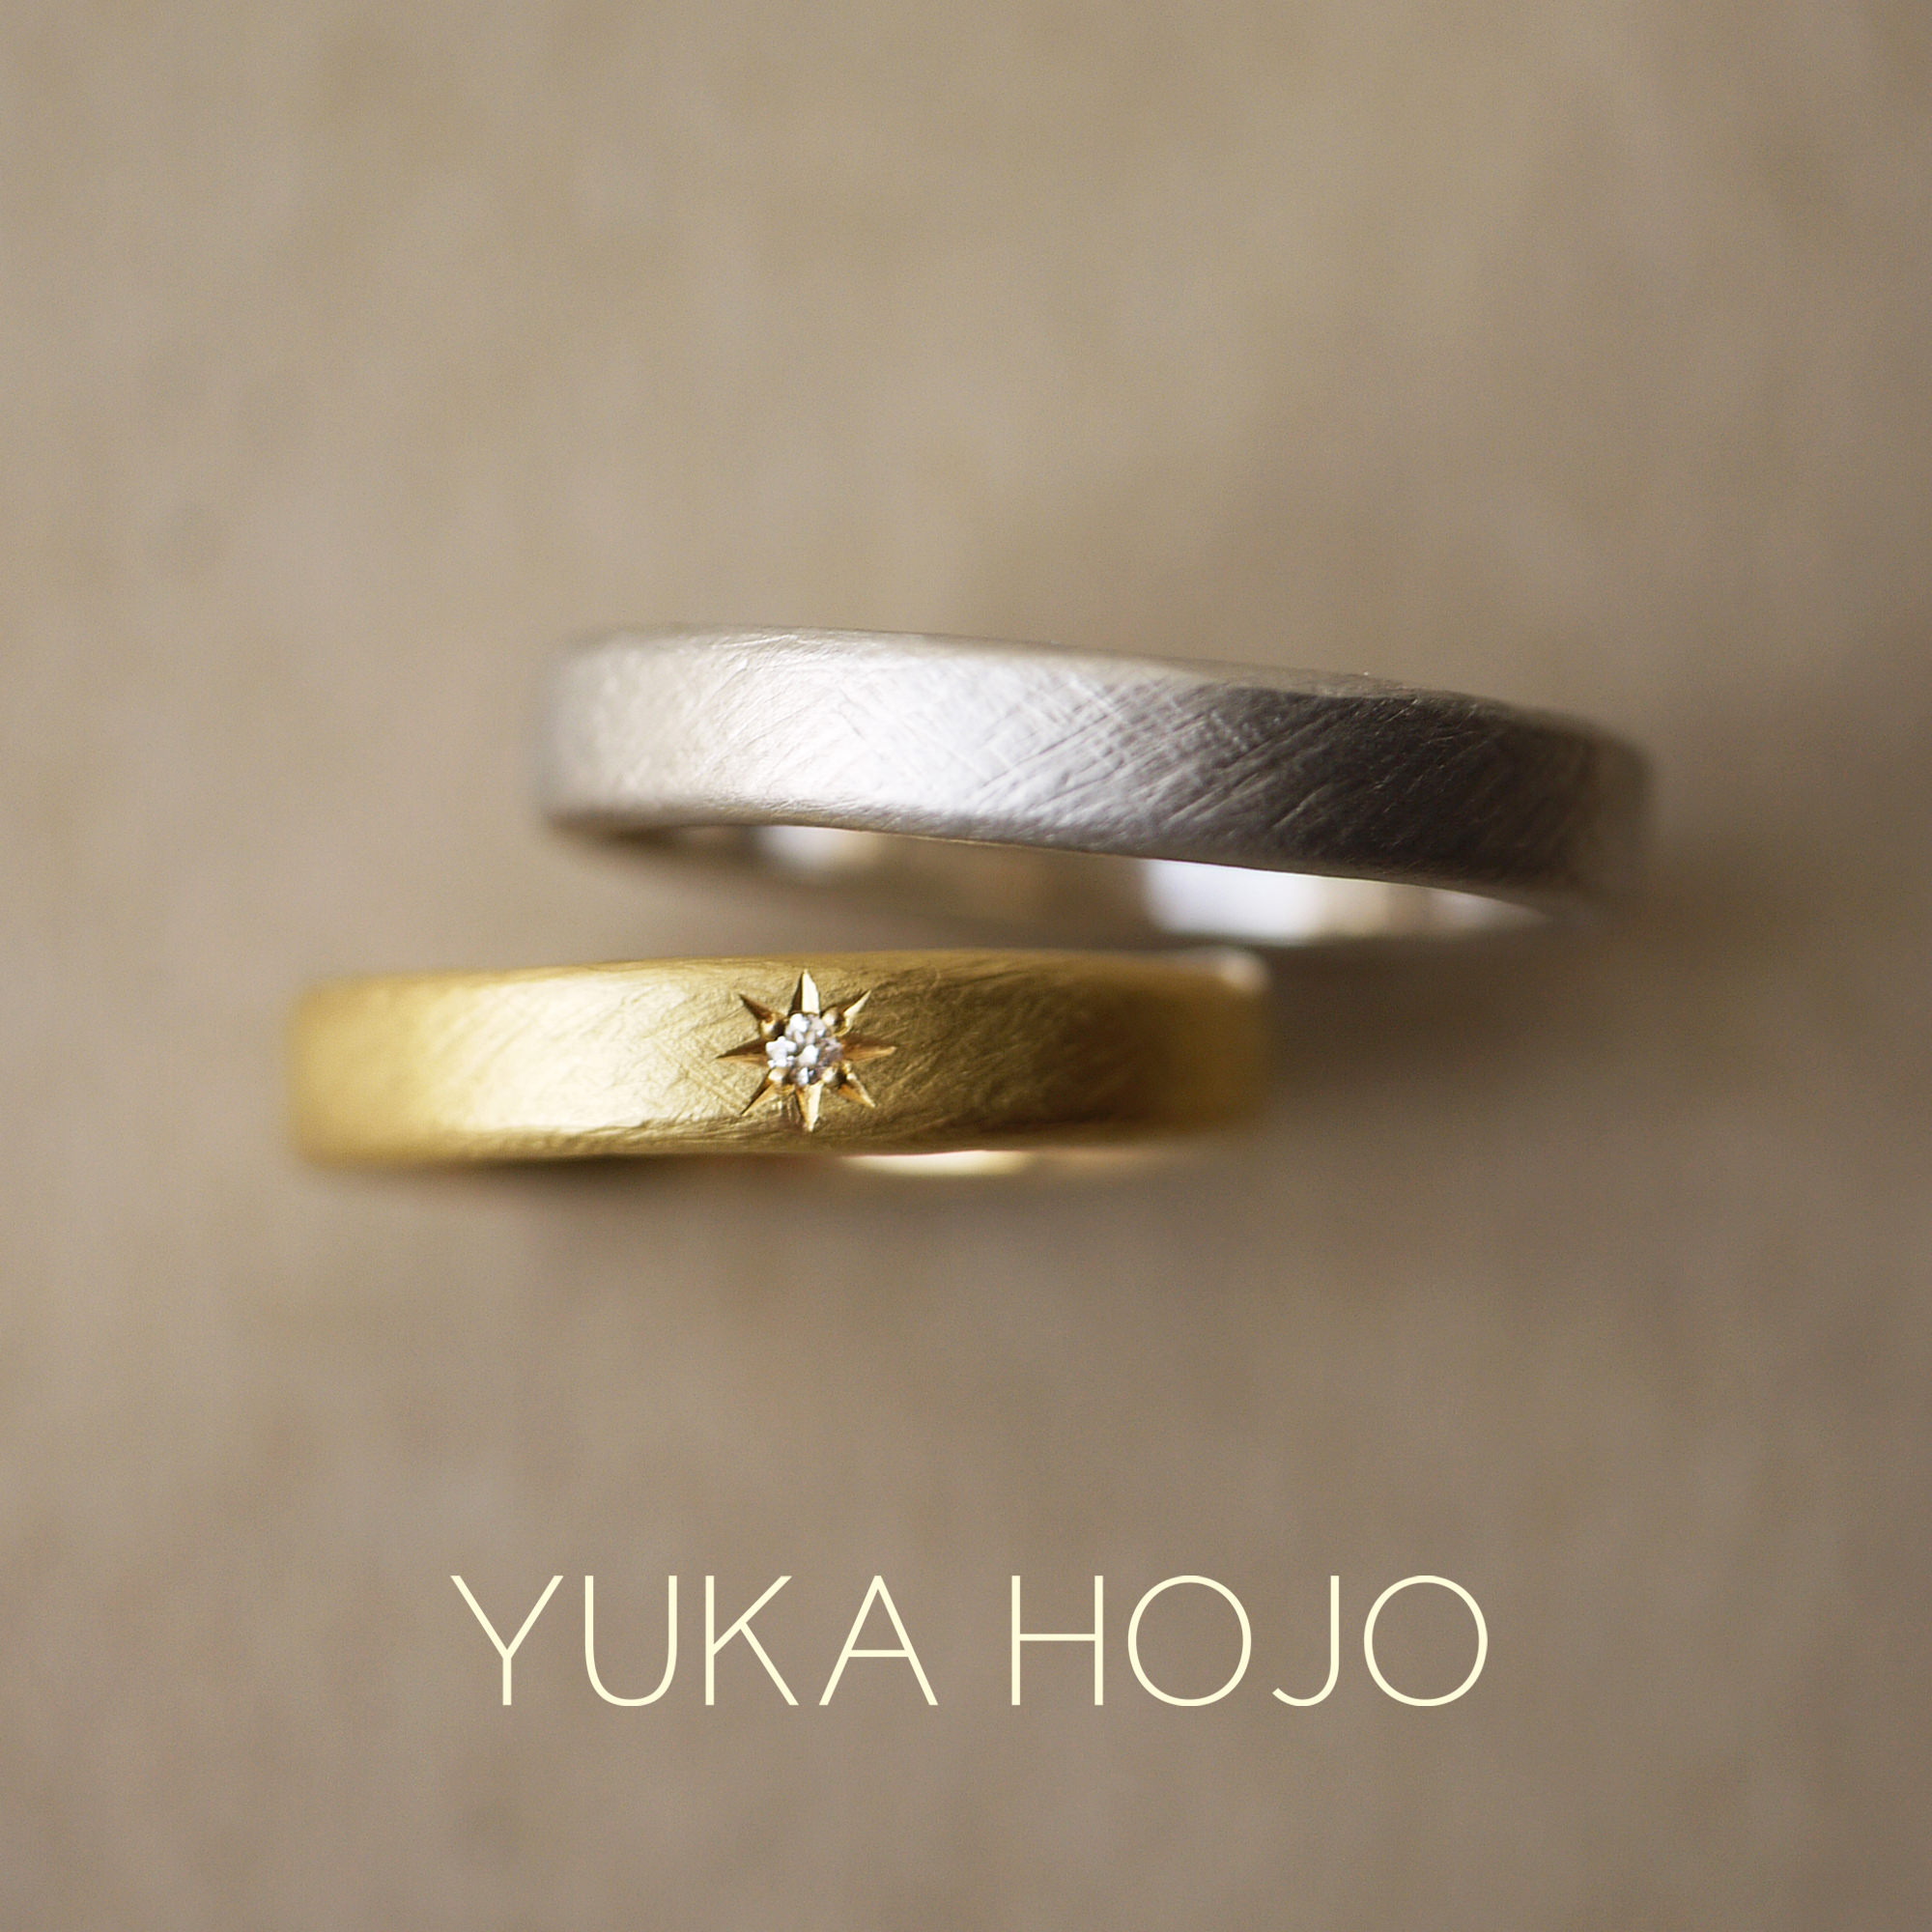 YUKA HOJOユカホウジョウの結婚指輪でマリッジリングのWeaveウィーブ